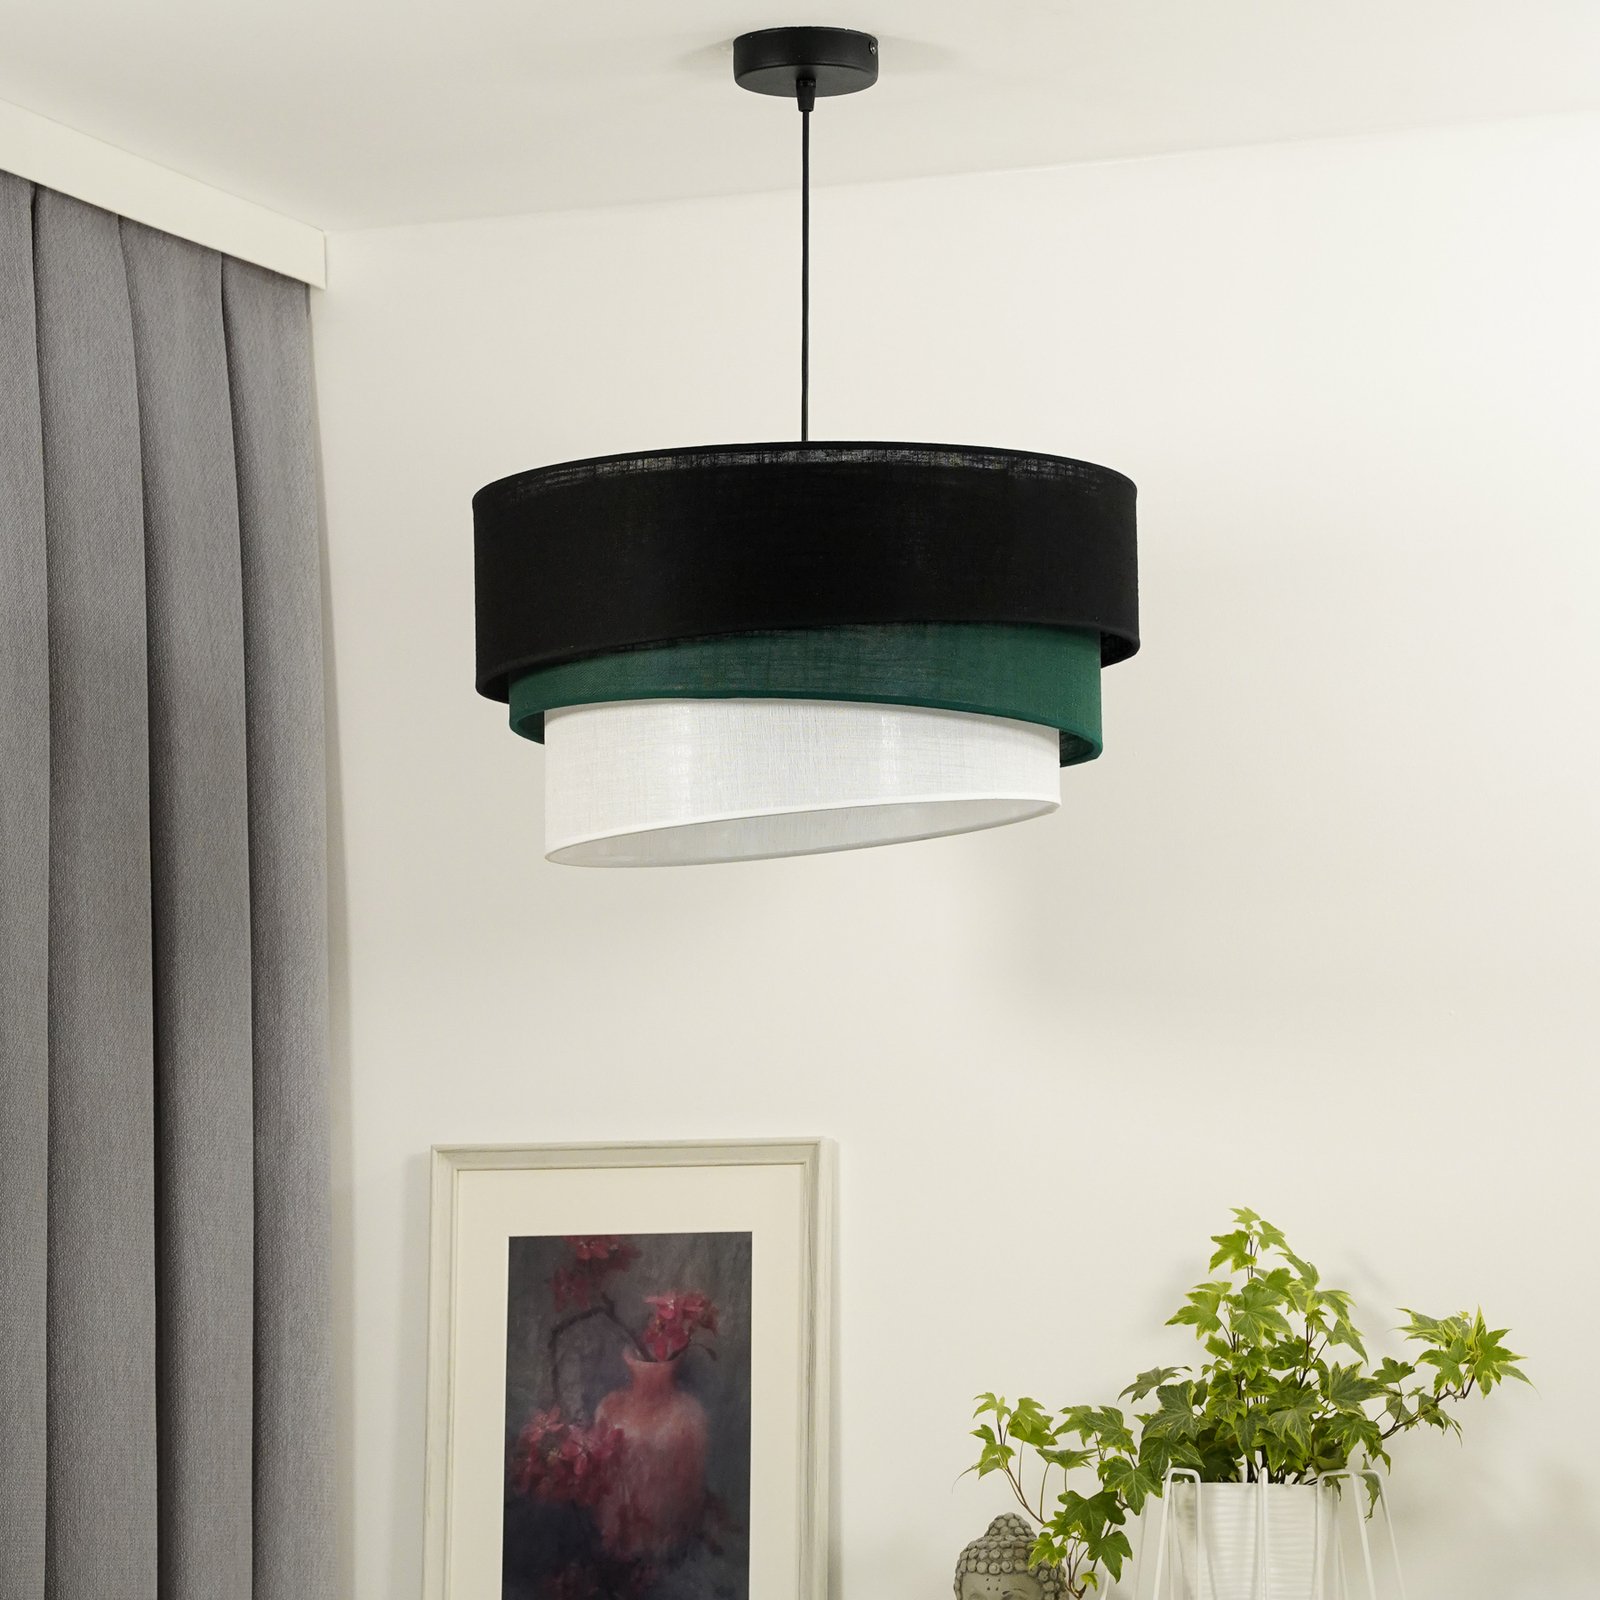 Hanglamp Euluna Trio, zwart/groen/wit, textiel, Ø 45 cm